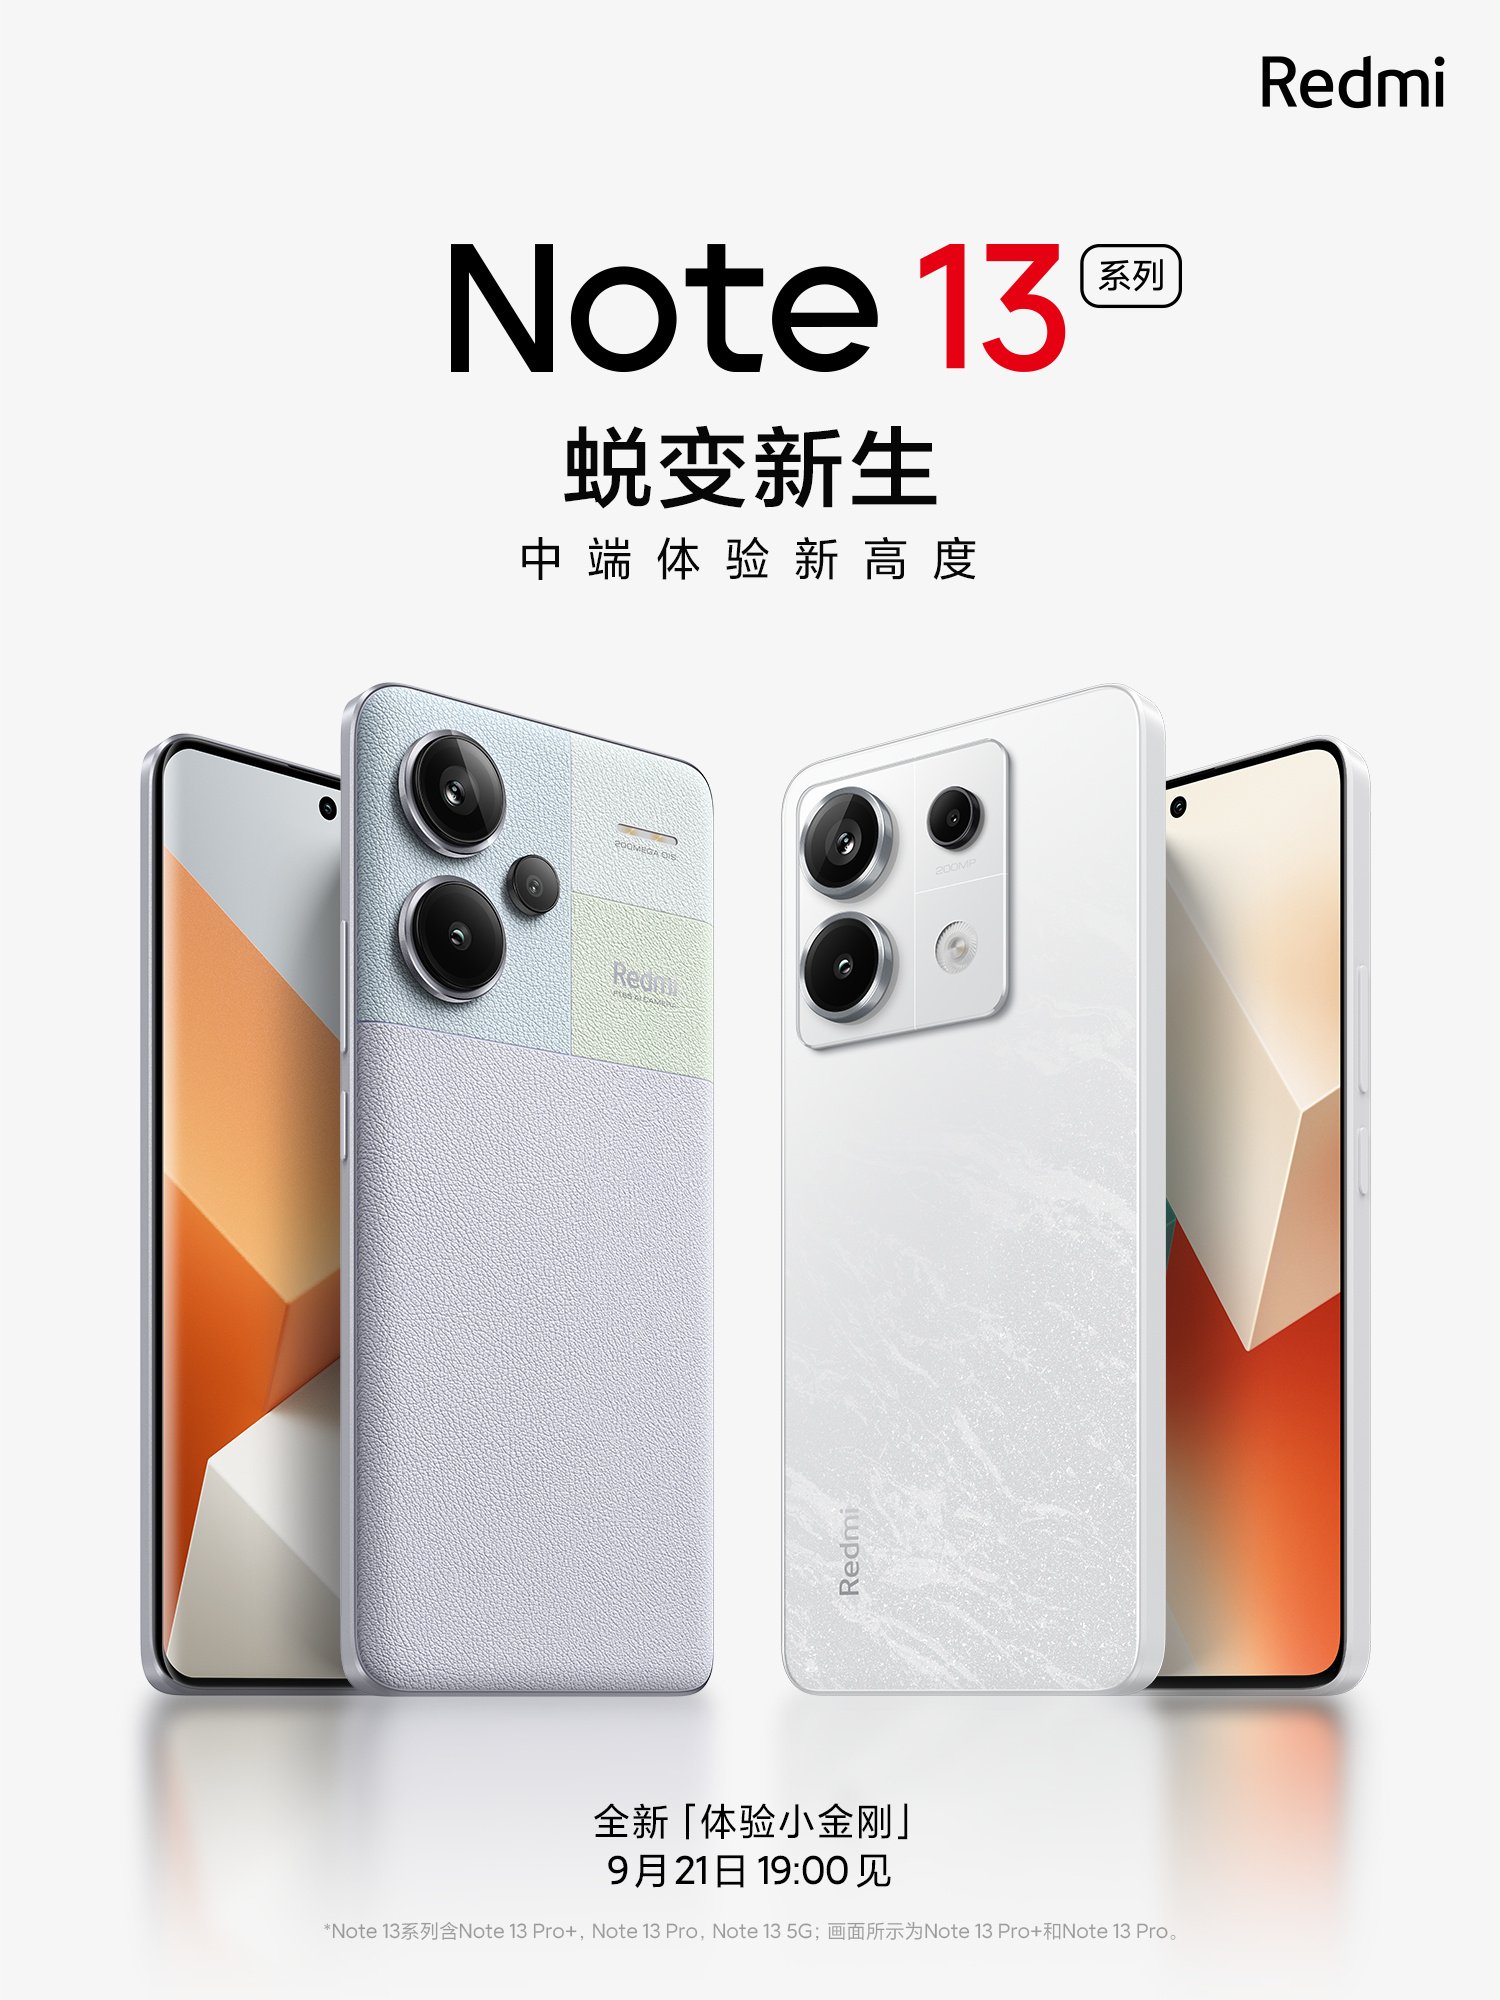 Xiaomi Redmi Note 13 Launch Date Confirmed